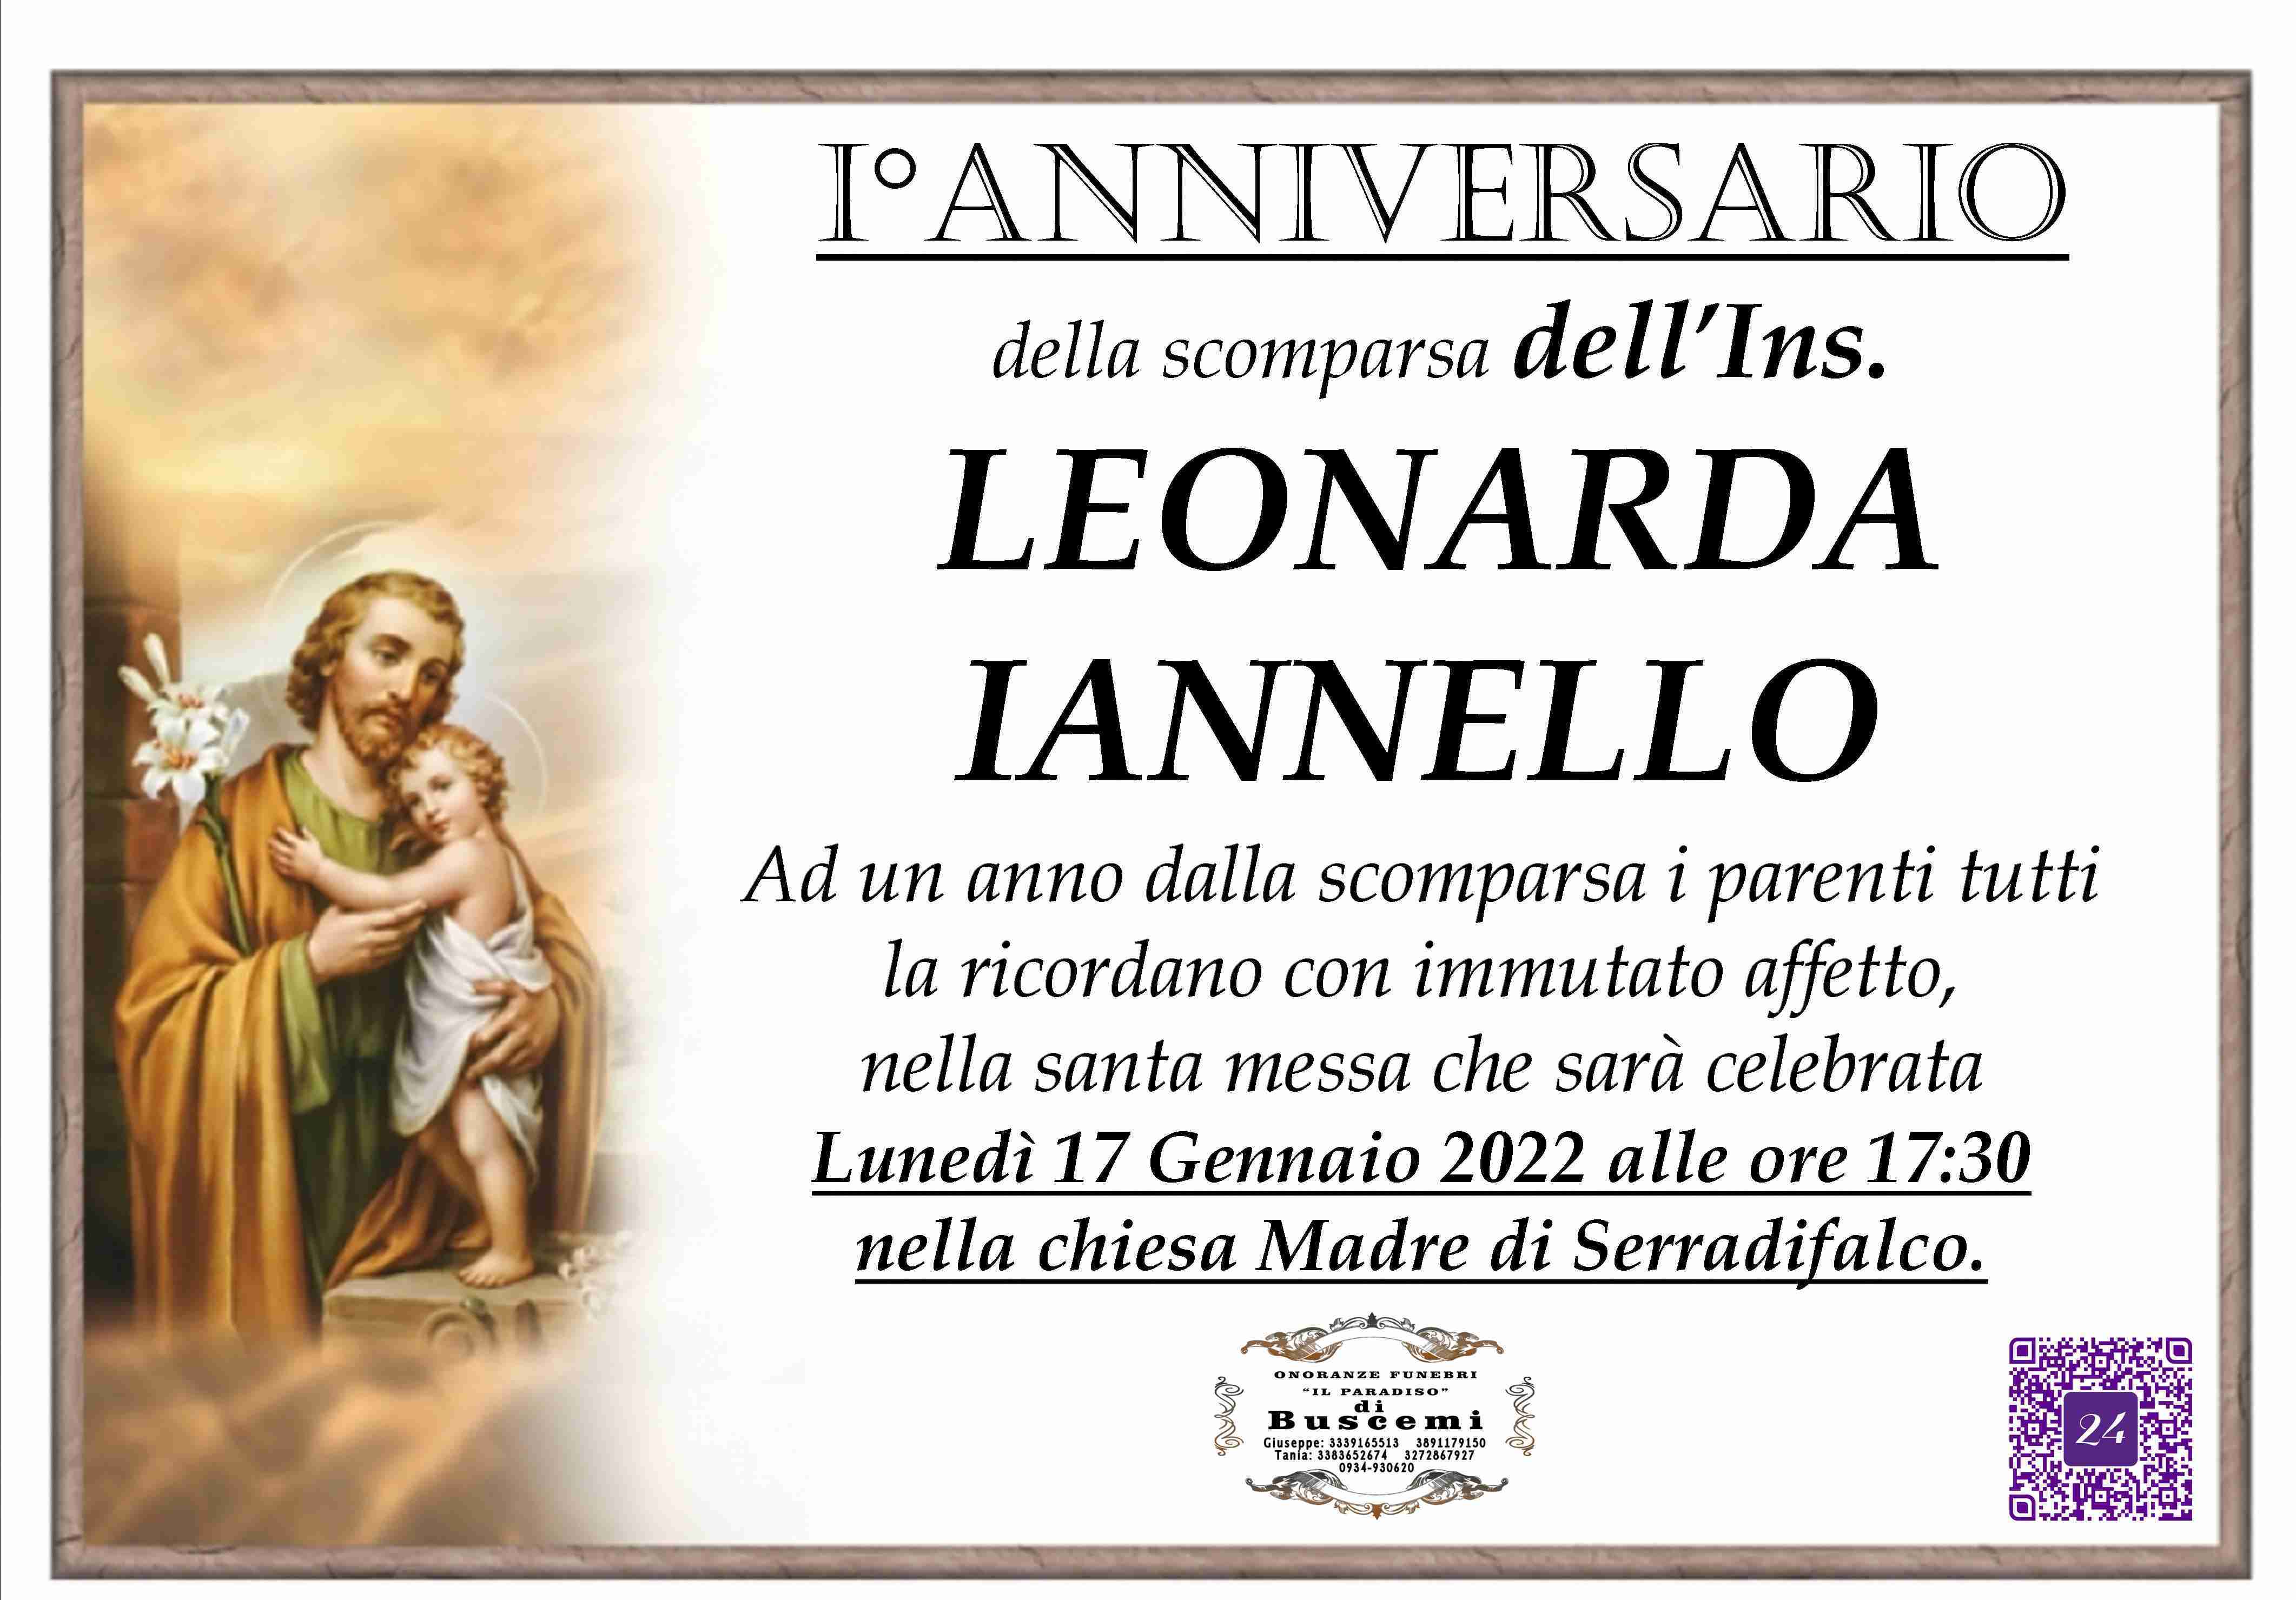 Leonarda Iannello